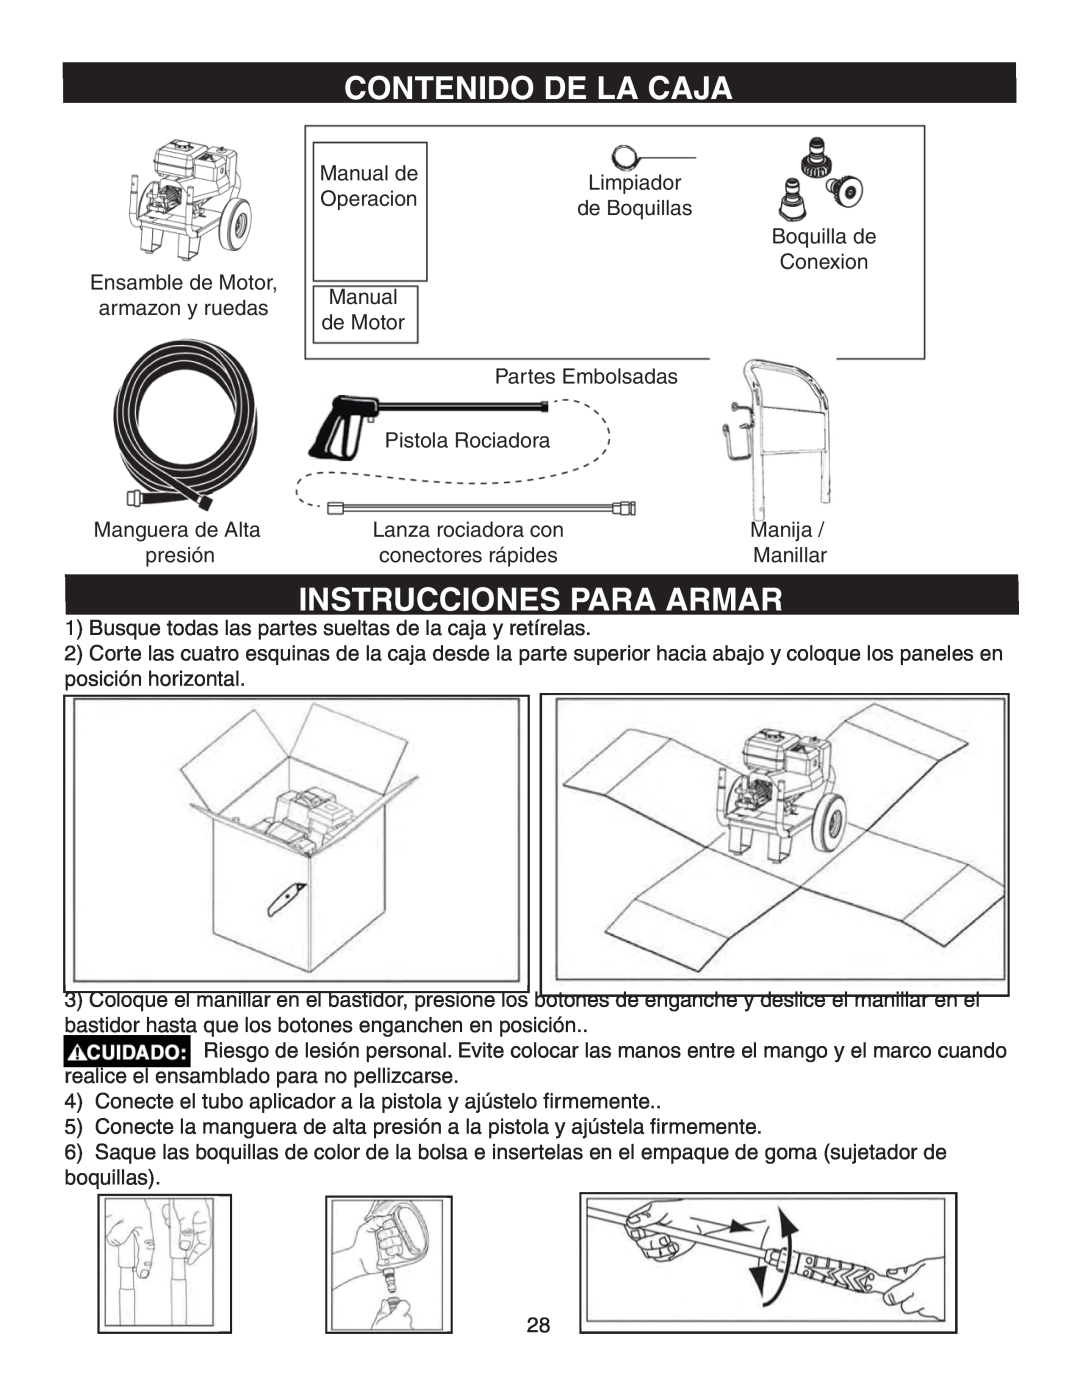 Simpson MSV3000, MSV2600 warranty Contenido De La Caja, Instrucciones Para Armar 